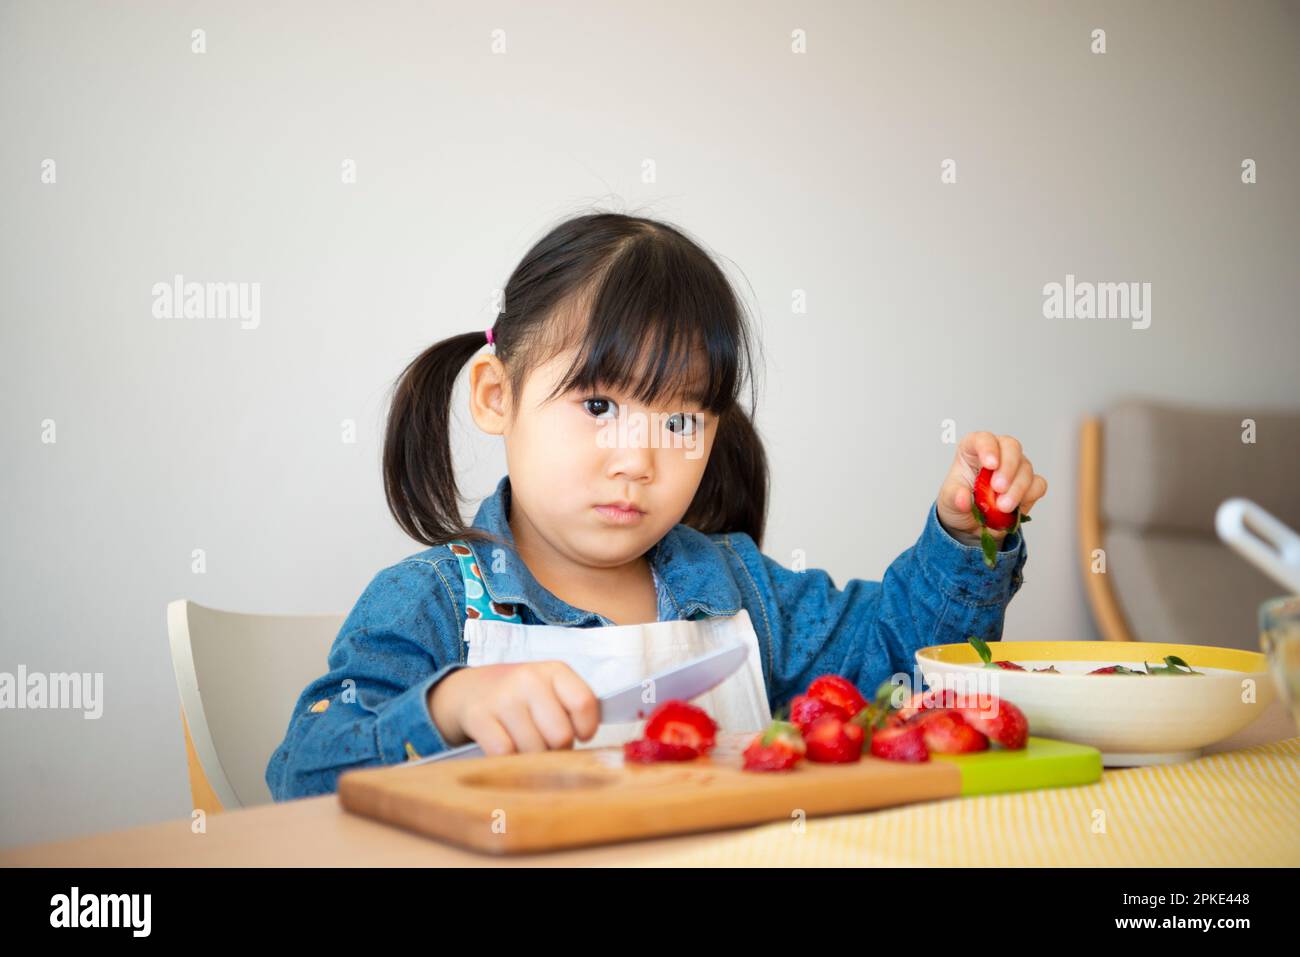 Girl cutting strawberries Stock Photo